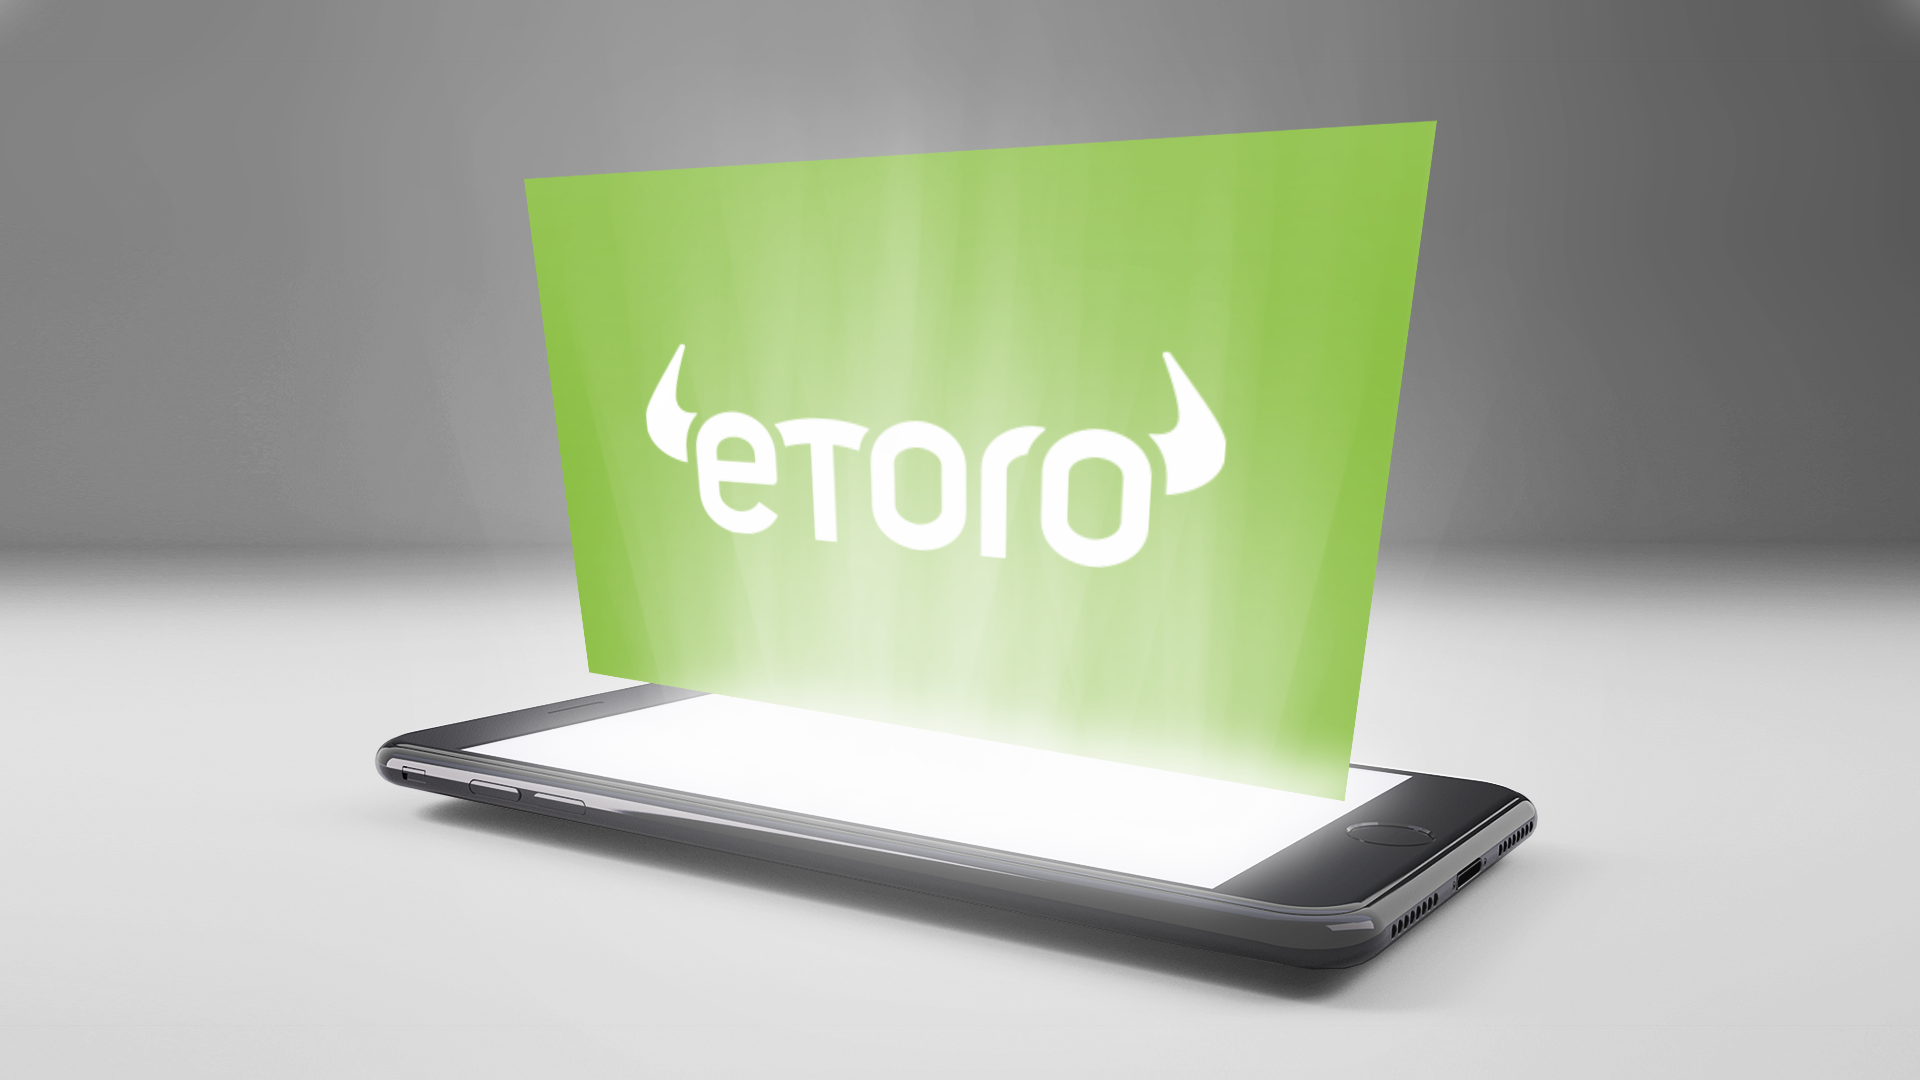 How to Invest in eToro IPO 2021